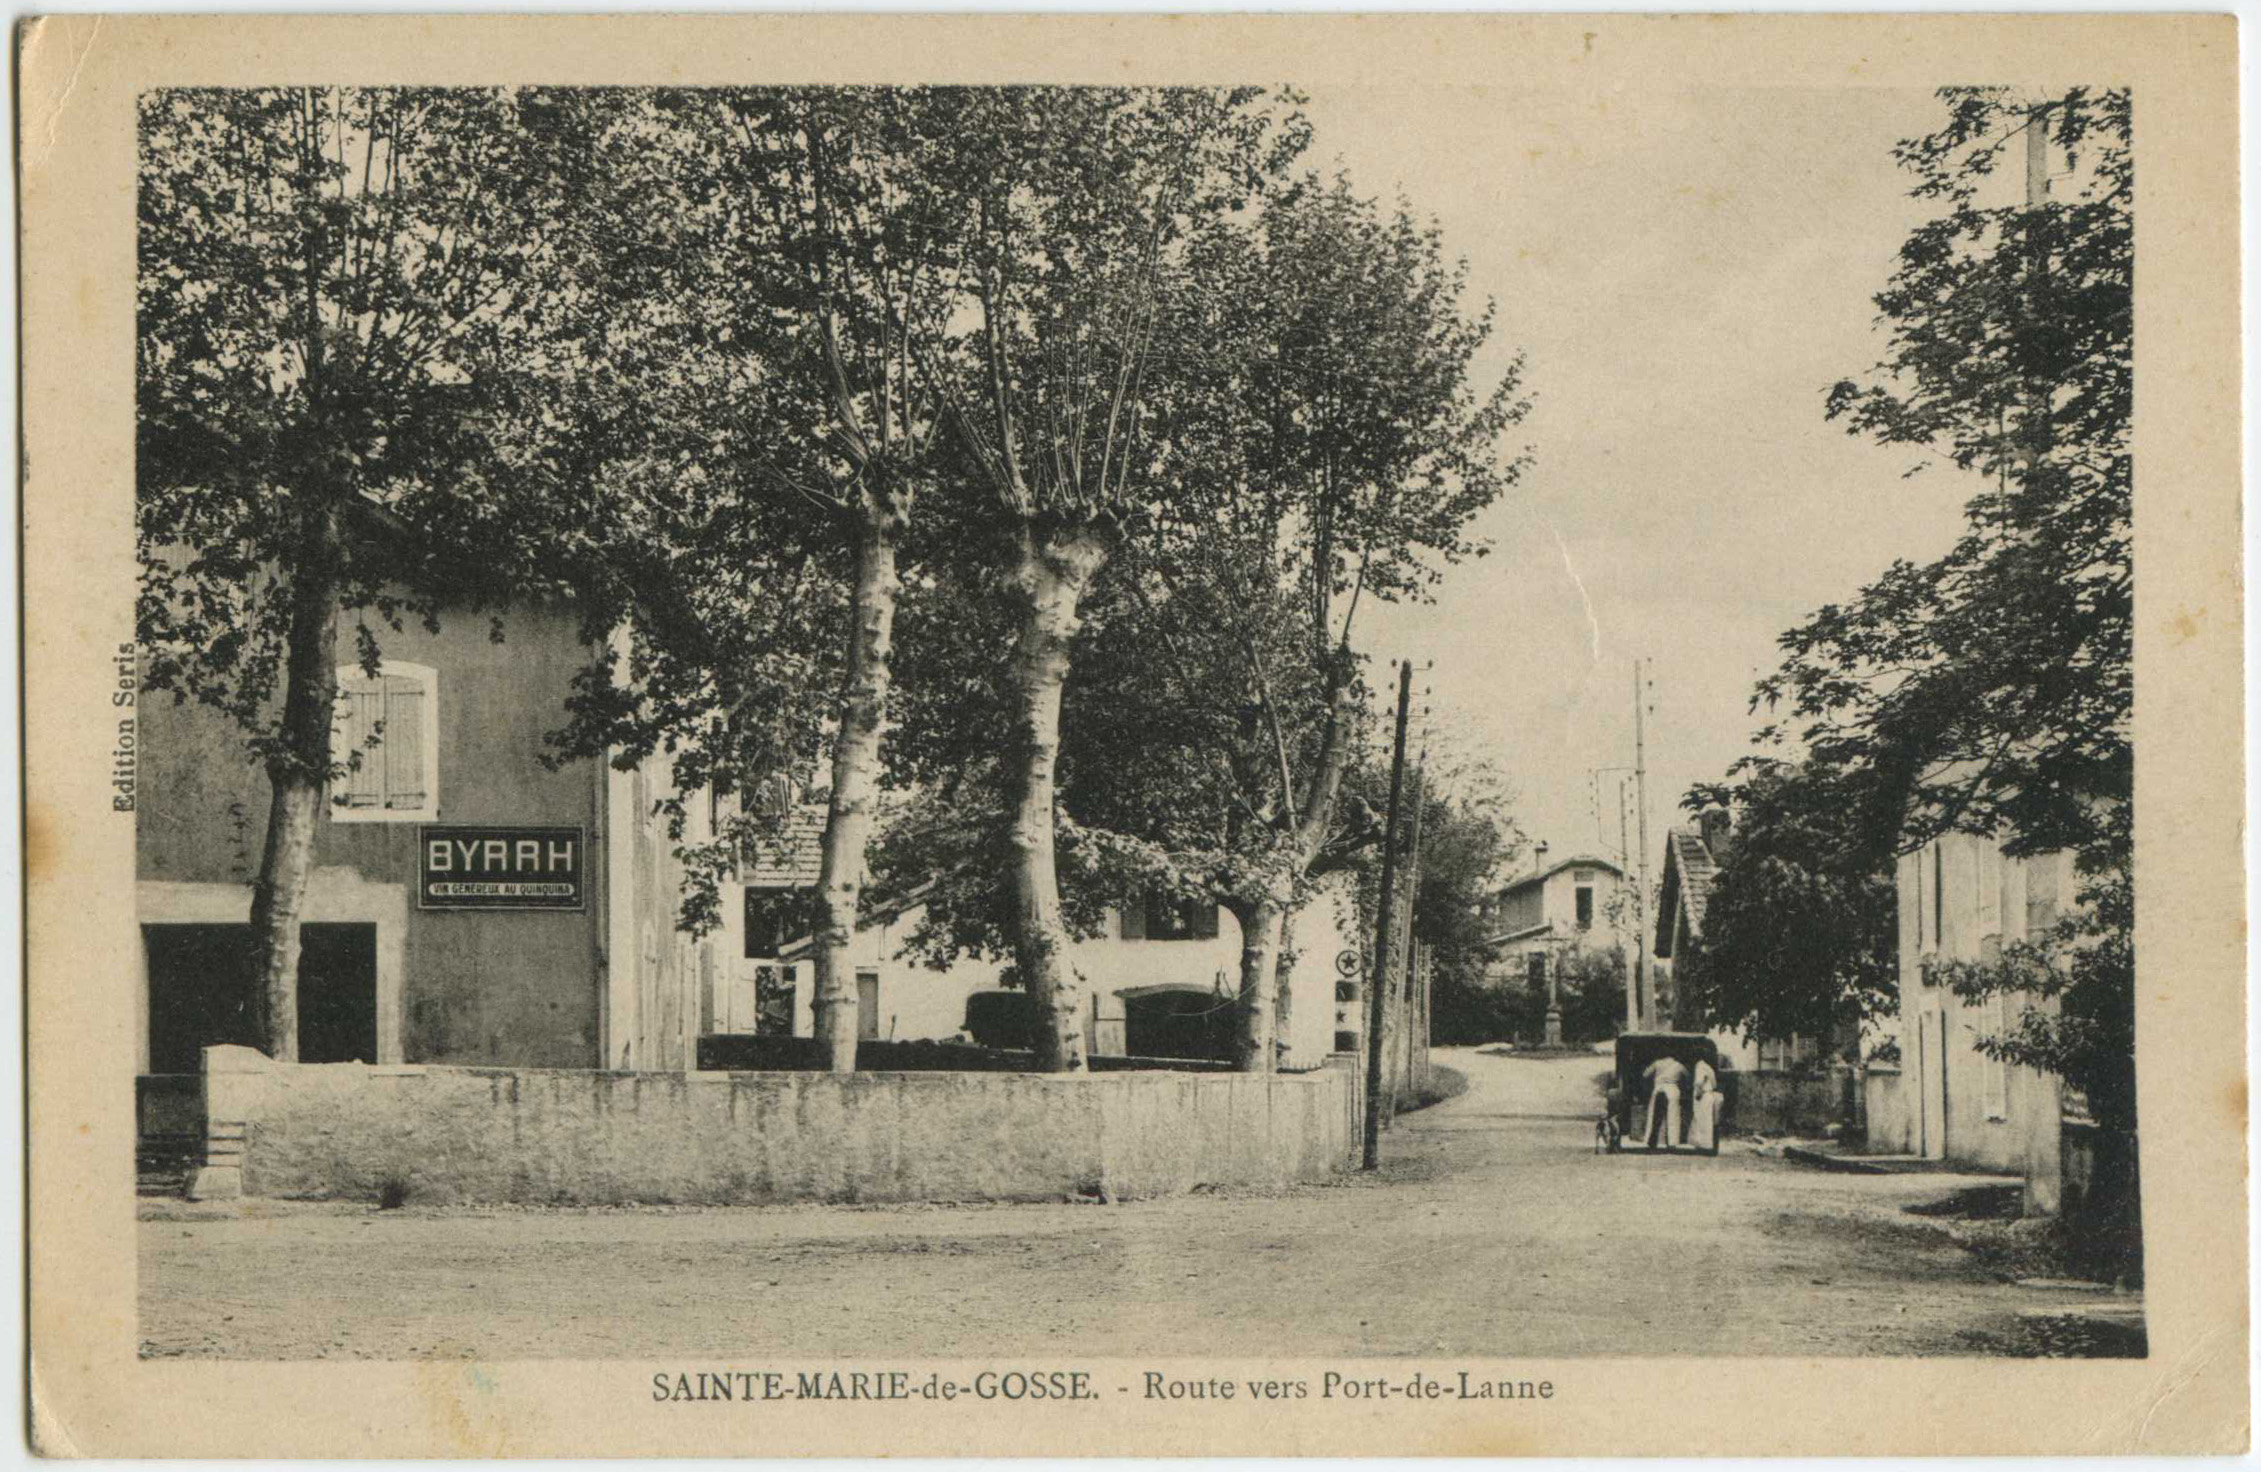 Sainte-Marie-de-Gosse - Route vers Port-de-Lanne